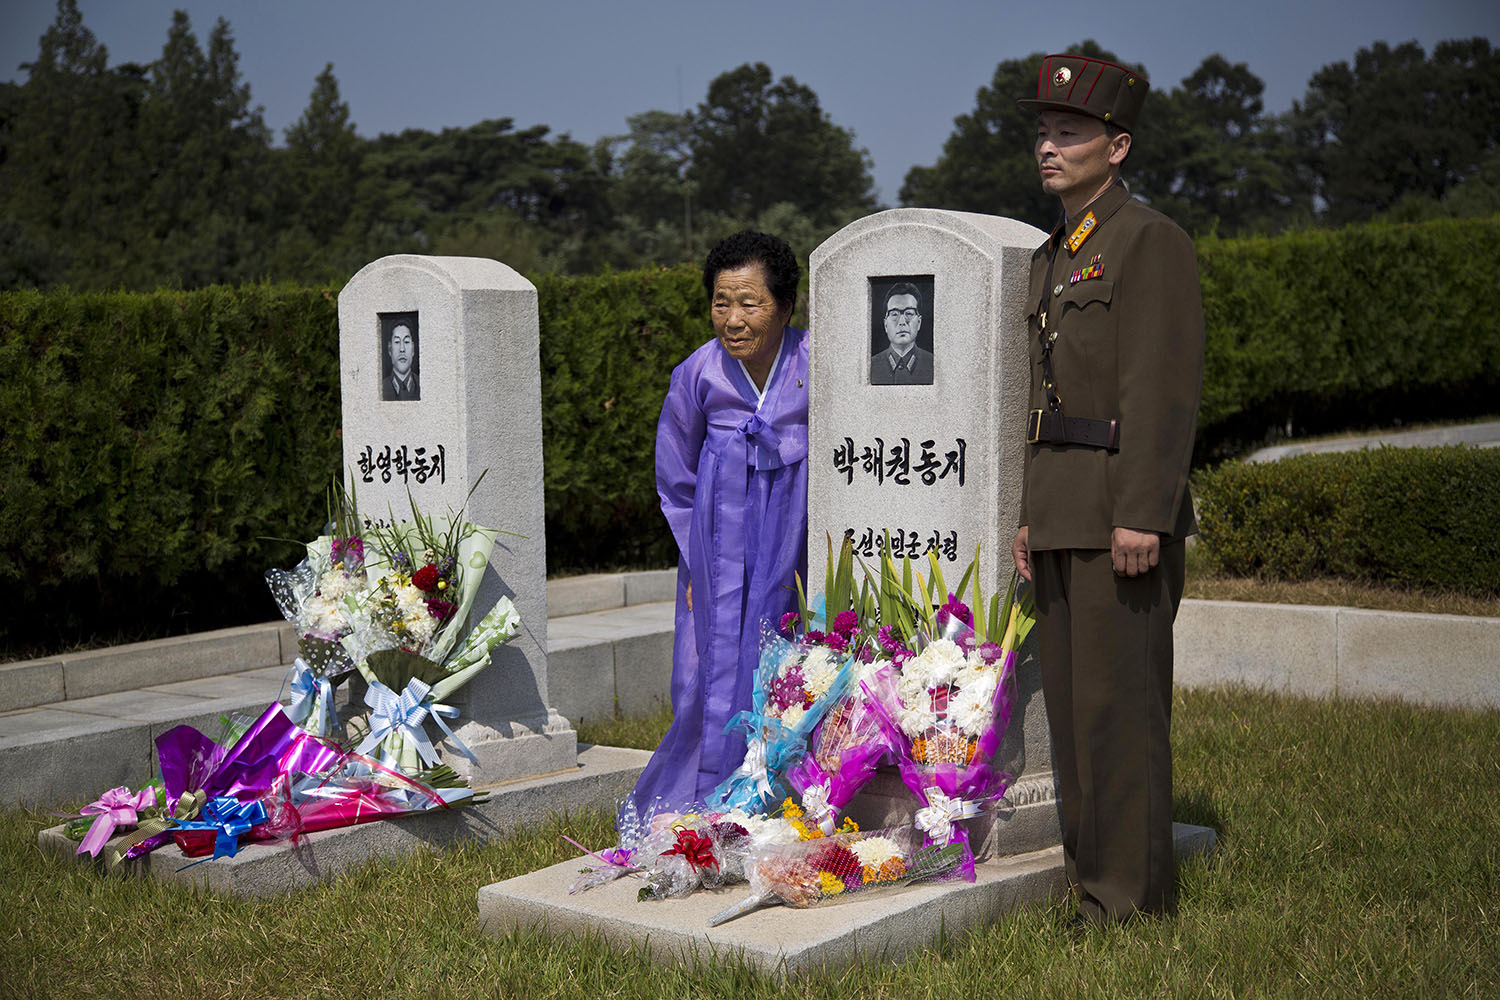 Los coreanos del Norte y del Sur celebran el Chuseok, una fiesta similar al Día de Acción de Gracias